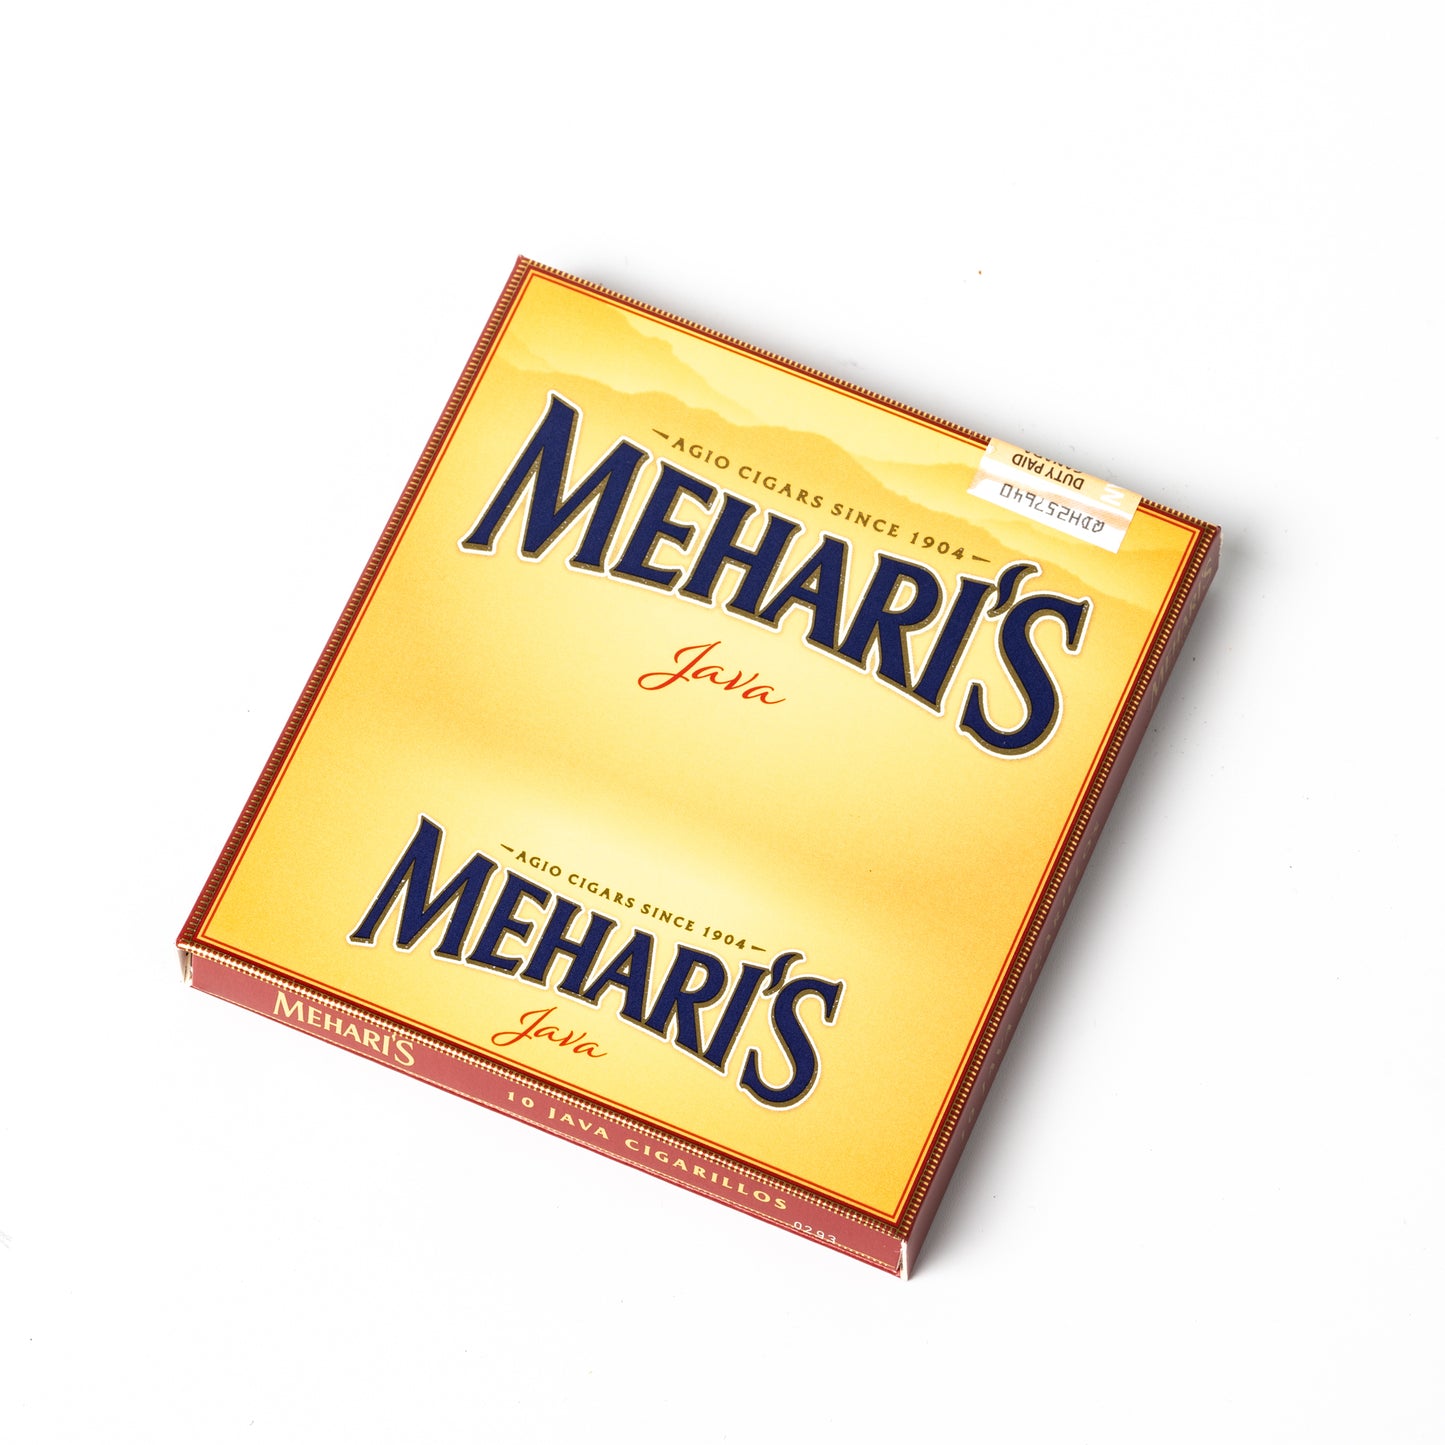 Mehari's Java